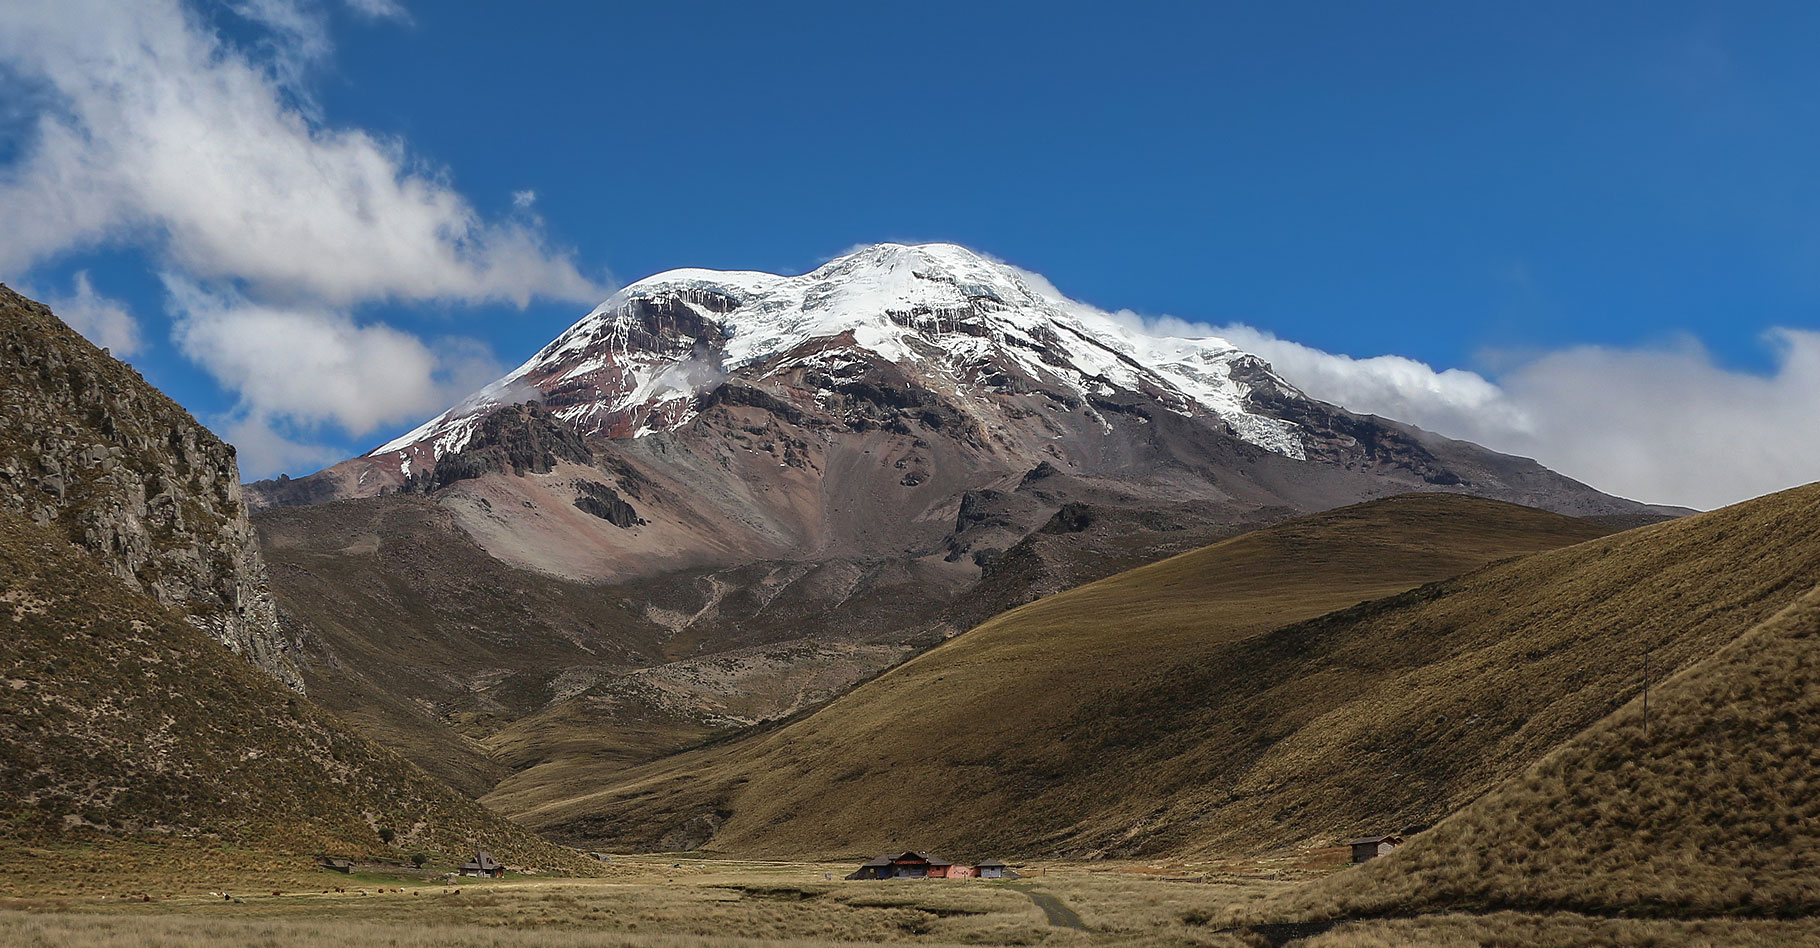 Le volcan Chimborazo (6268m) en Équateur. © Bernard Gagnon - Domaine public
